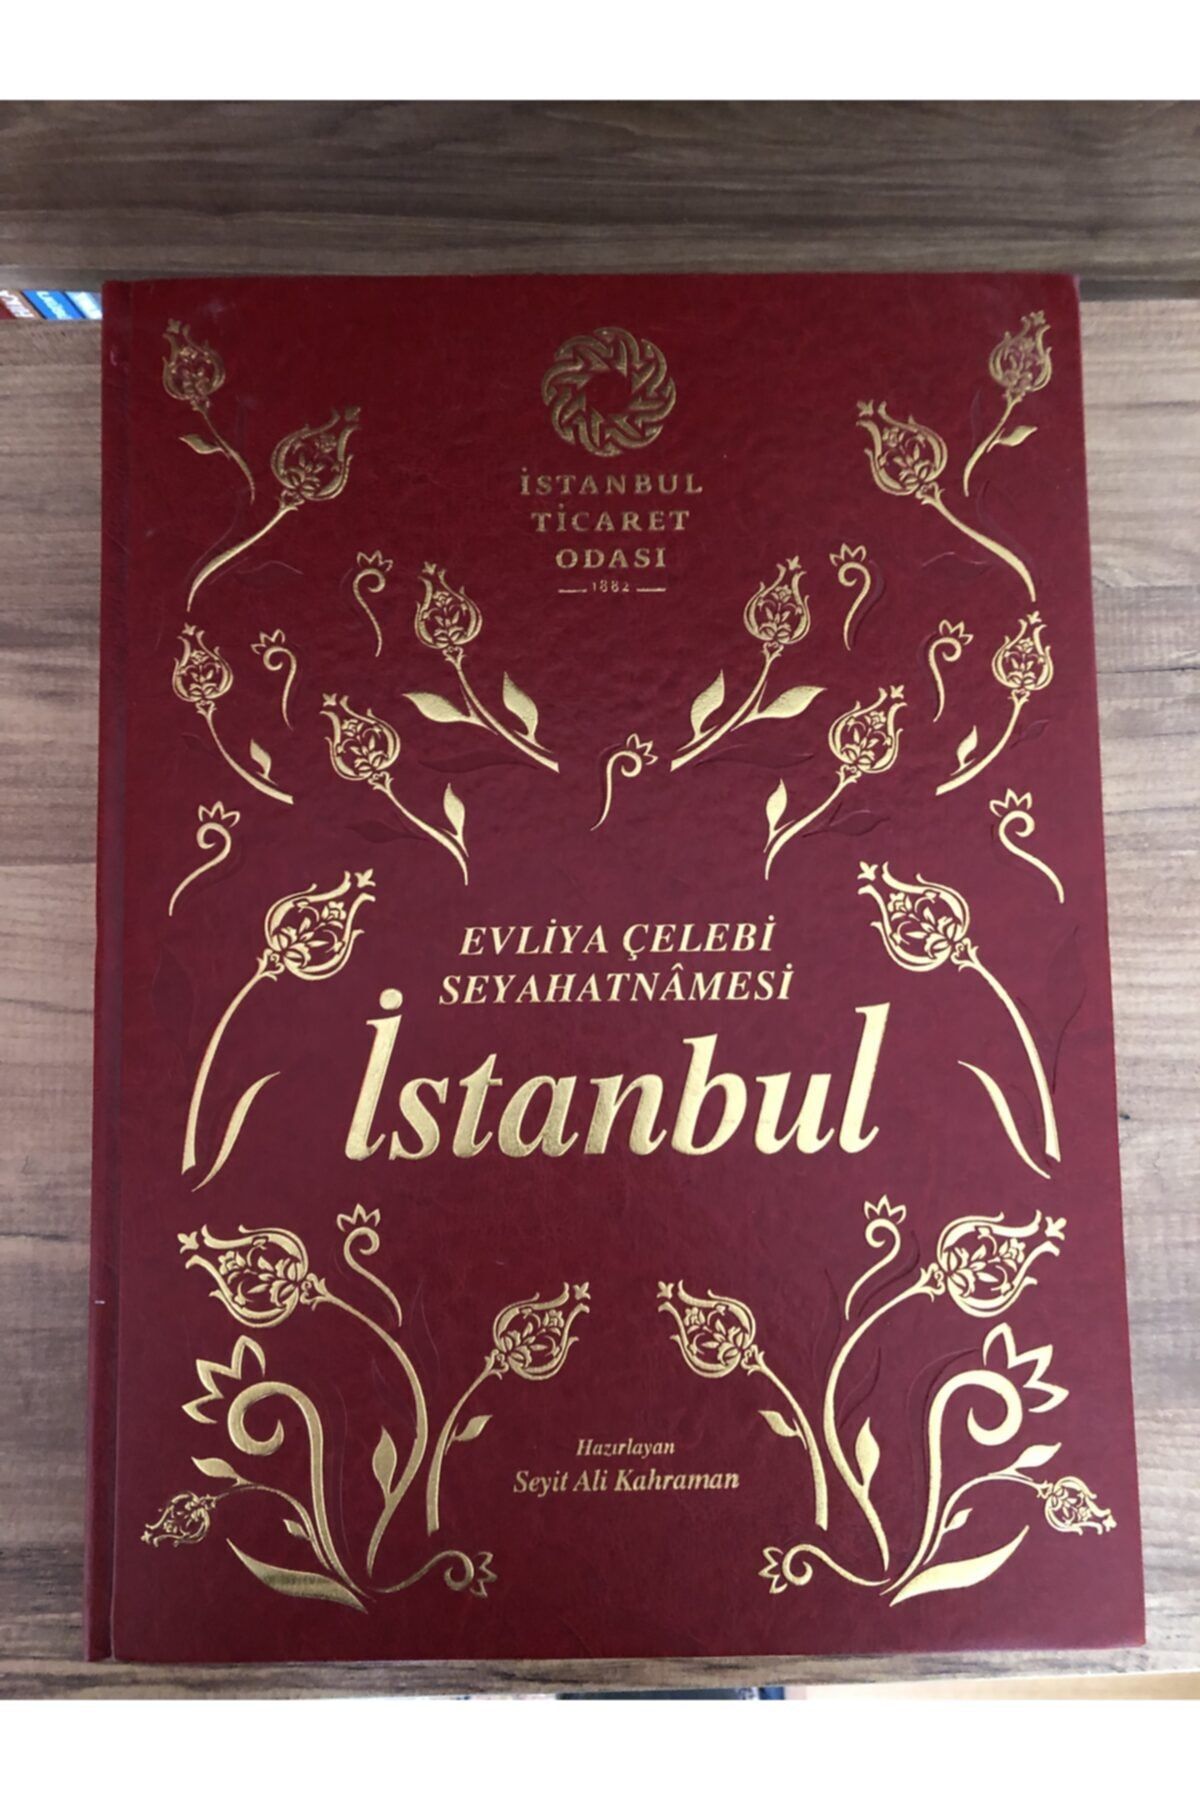 İstanbul Ticaret Odası Evliya Çelebi Seyahatnamesi Istanbul | Ito Özel Ve Sayılı Baskı